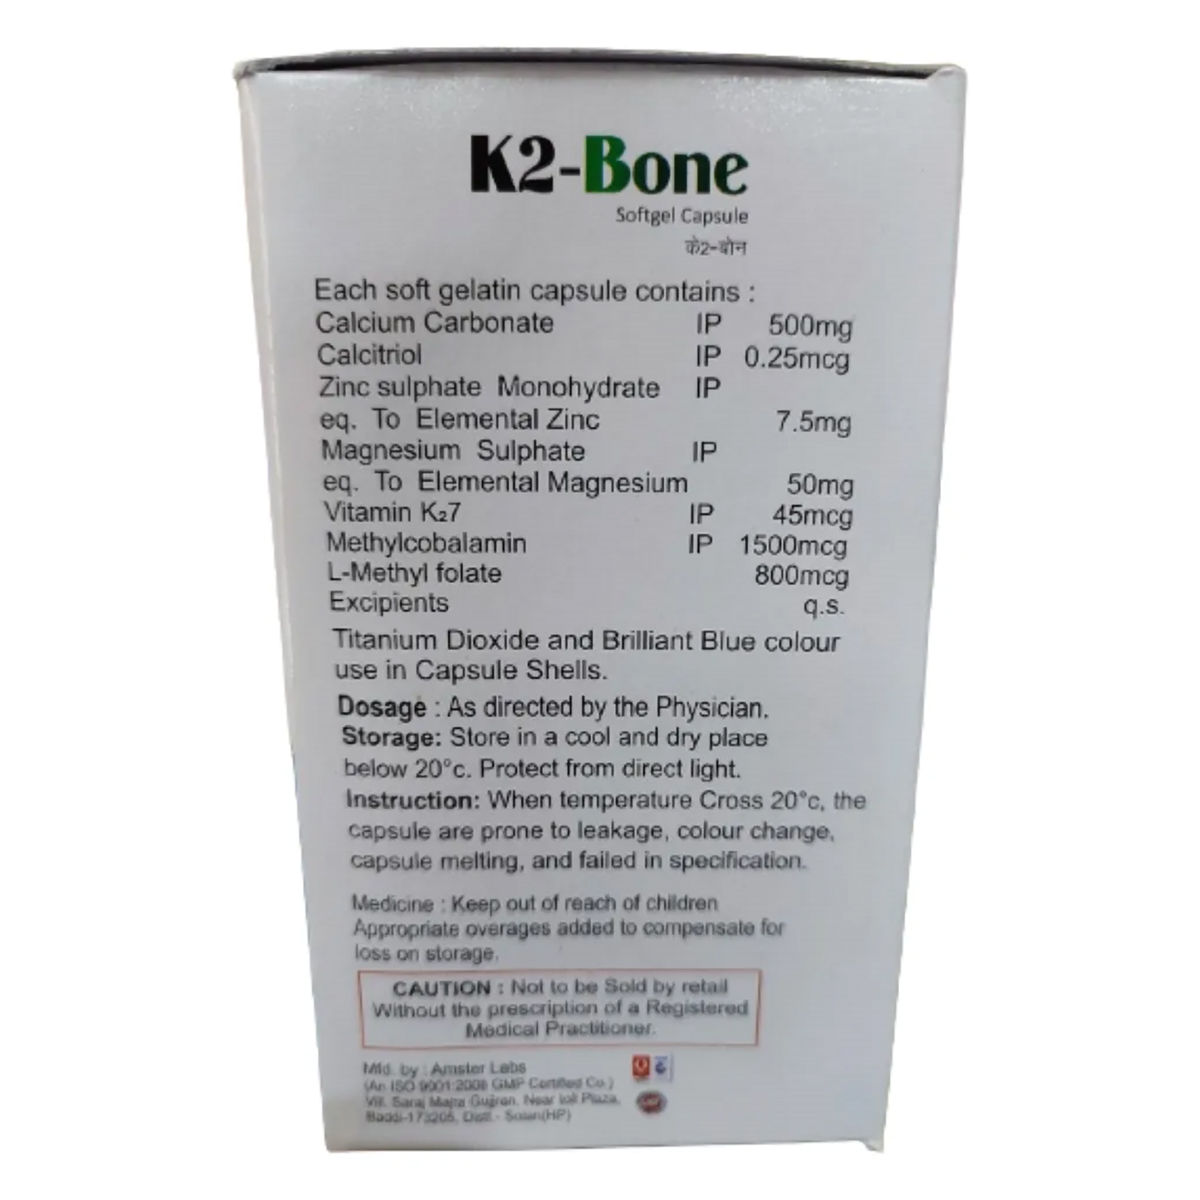 K2-Bone Softgel Capsule 10's, Pack of 10 CAPSULES